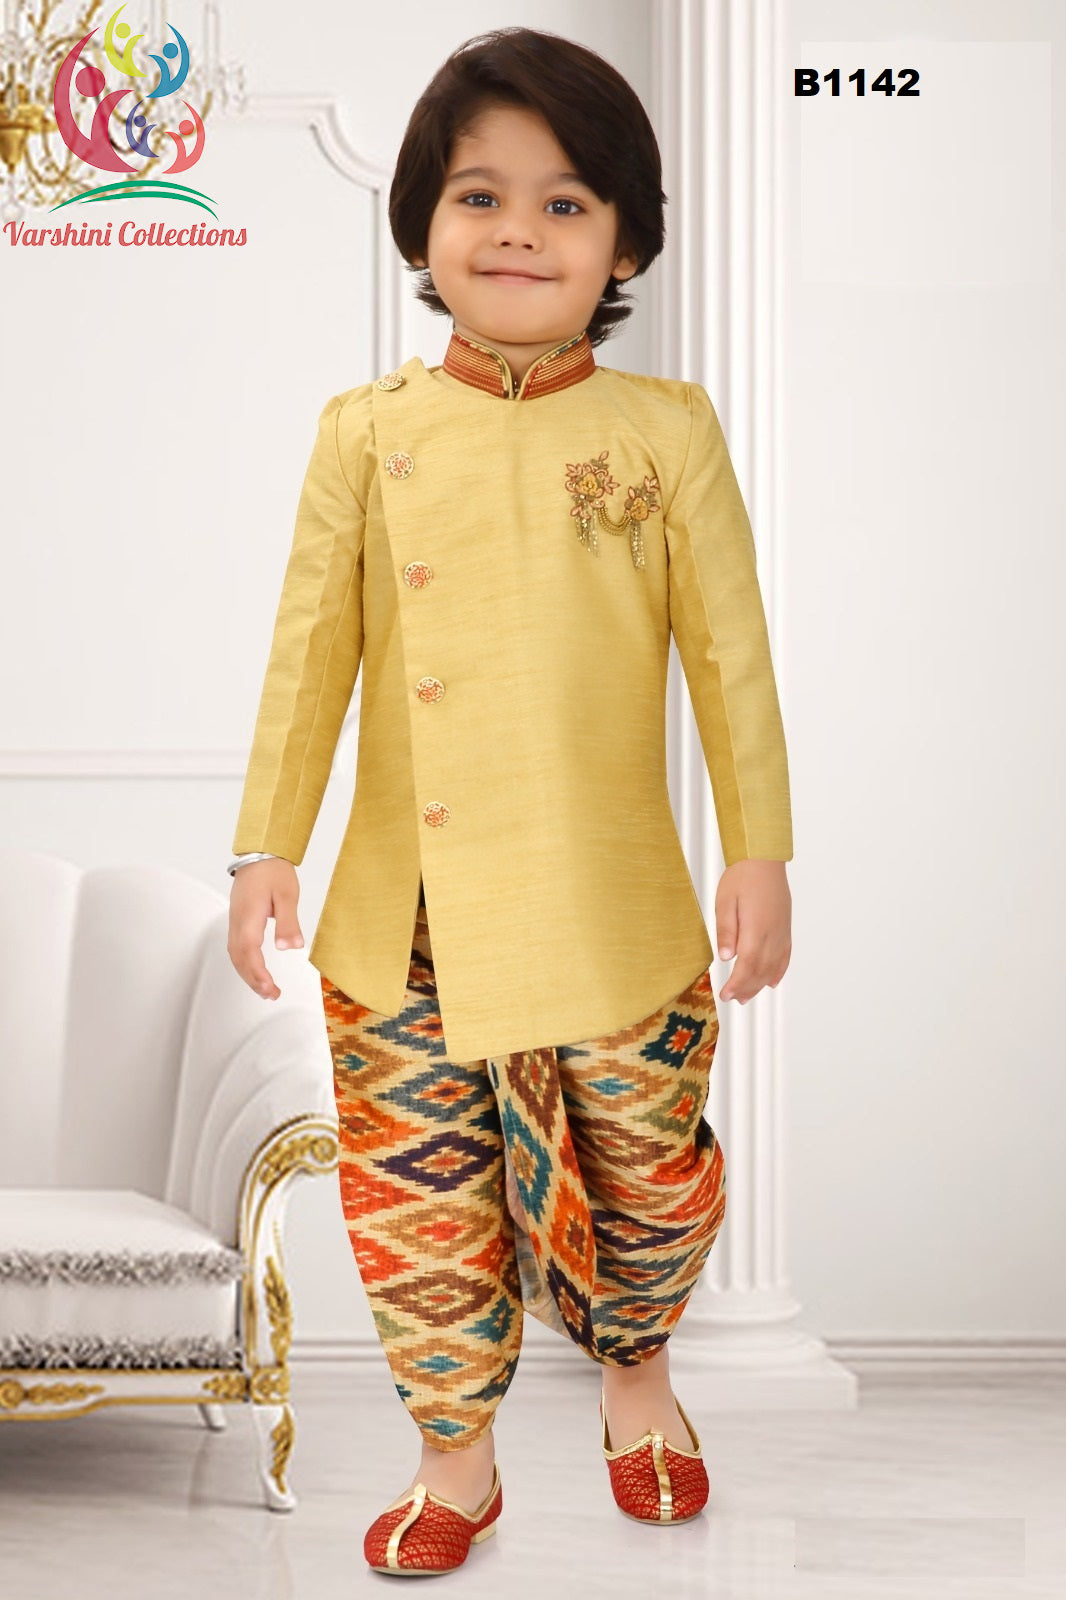 B1142 - Golden Yellow Jodhpuri Suit w/ Ikkat Printed Dothi